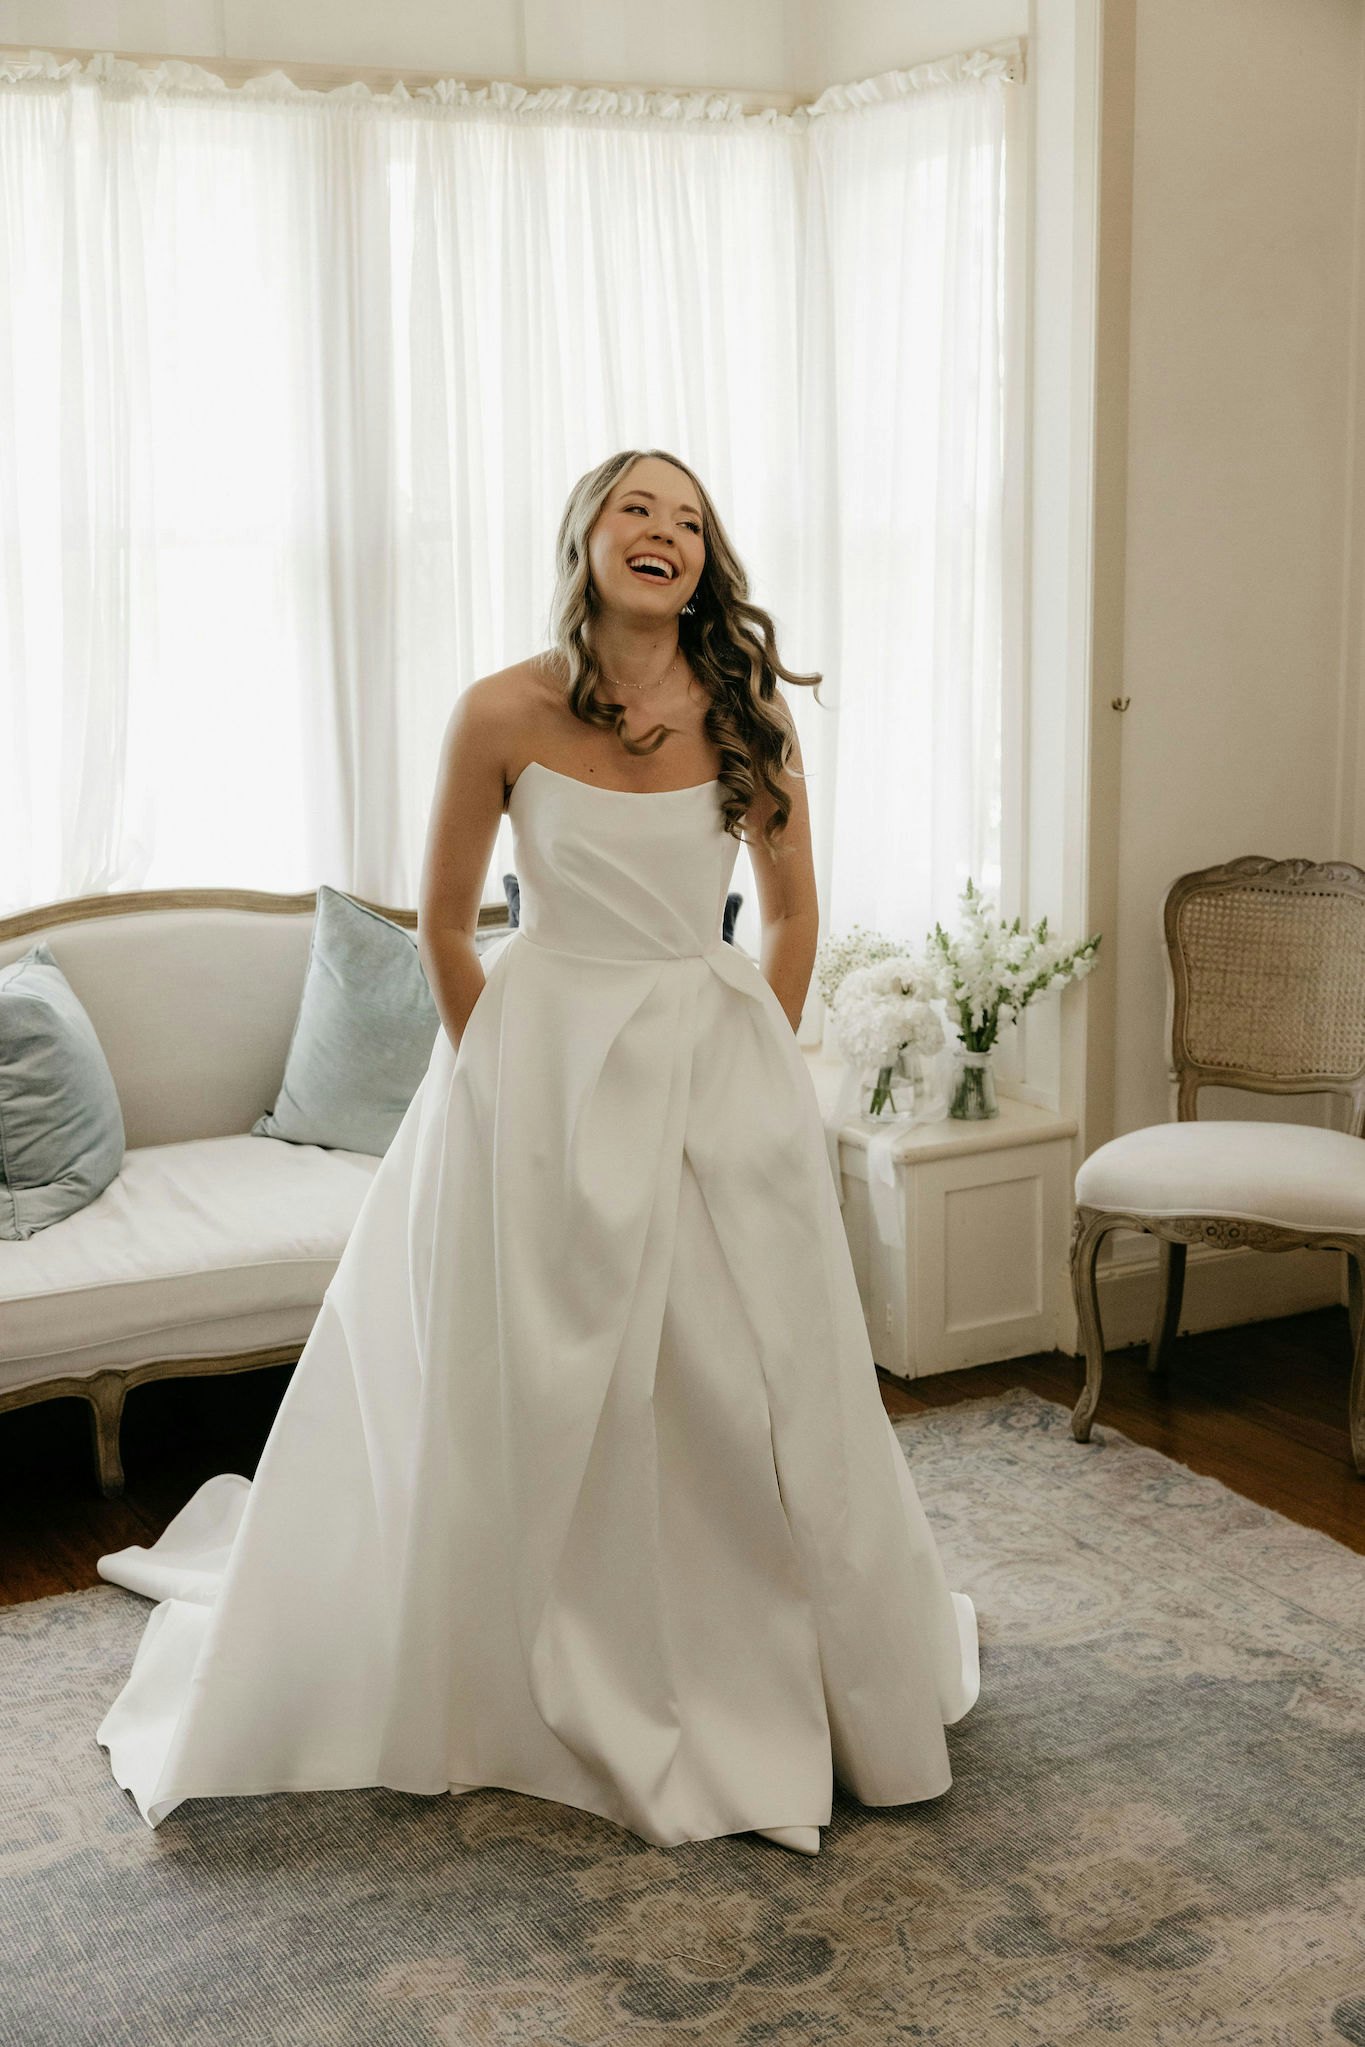 Bride laughing wearing wedding dress